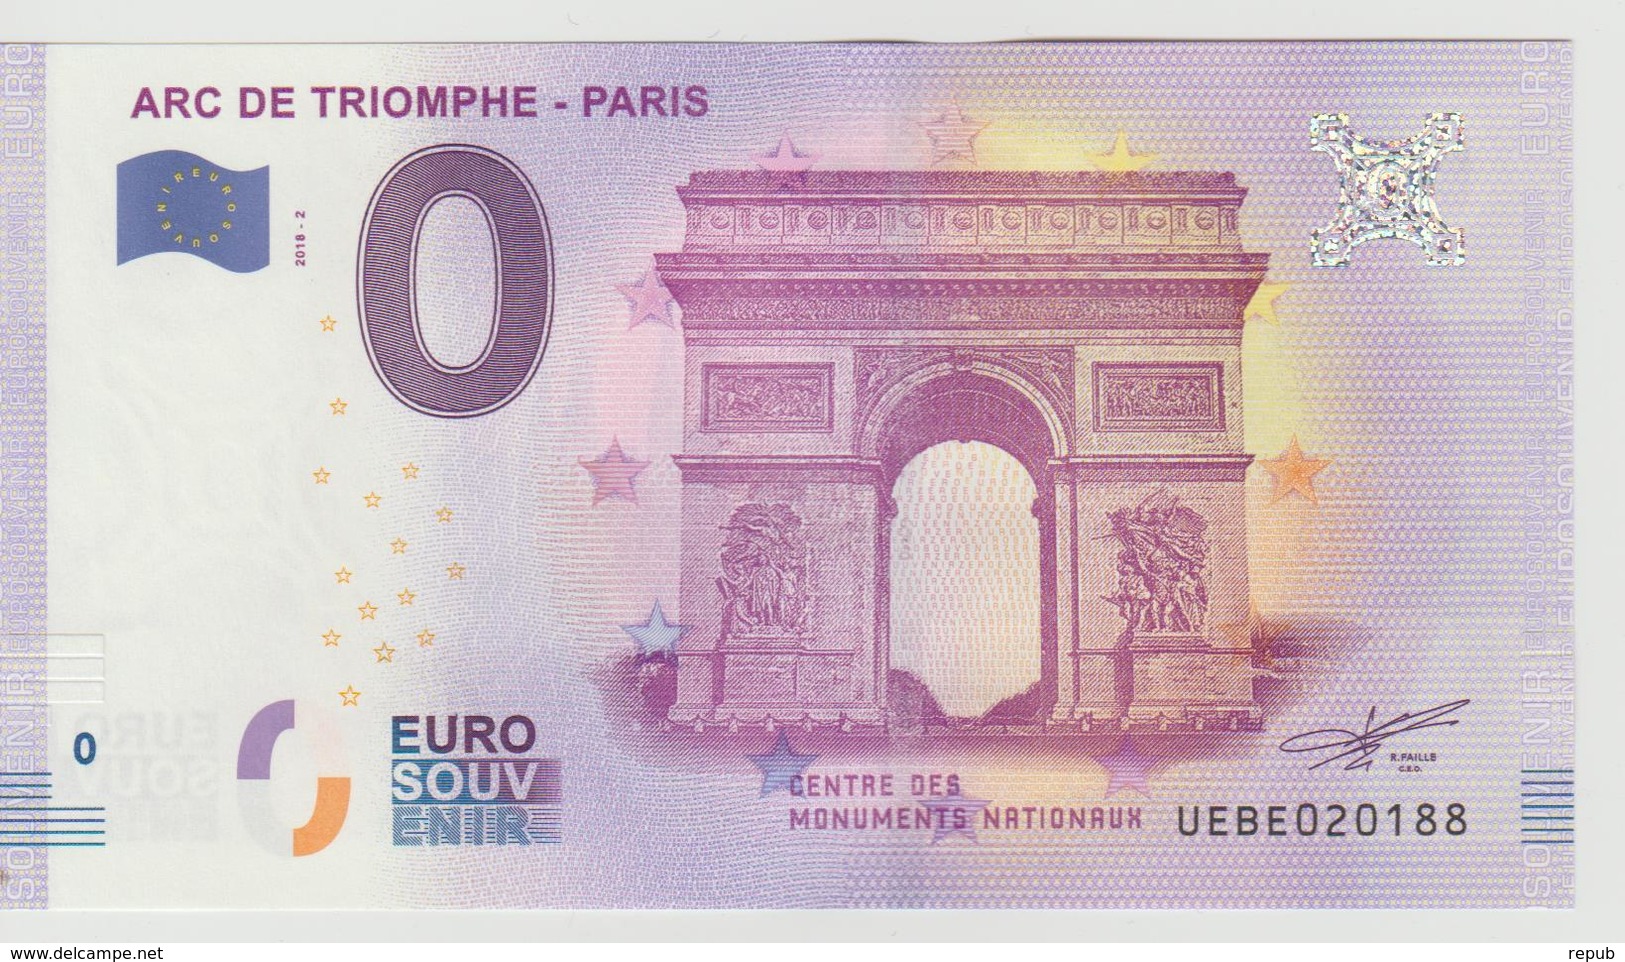 Billet Touristique 0 Euro Souvenir France 75 Arc De Triomphe - Paris 2018-2 N°UEBE020188 - Essais Privés / Non-officiels